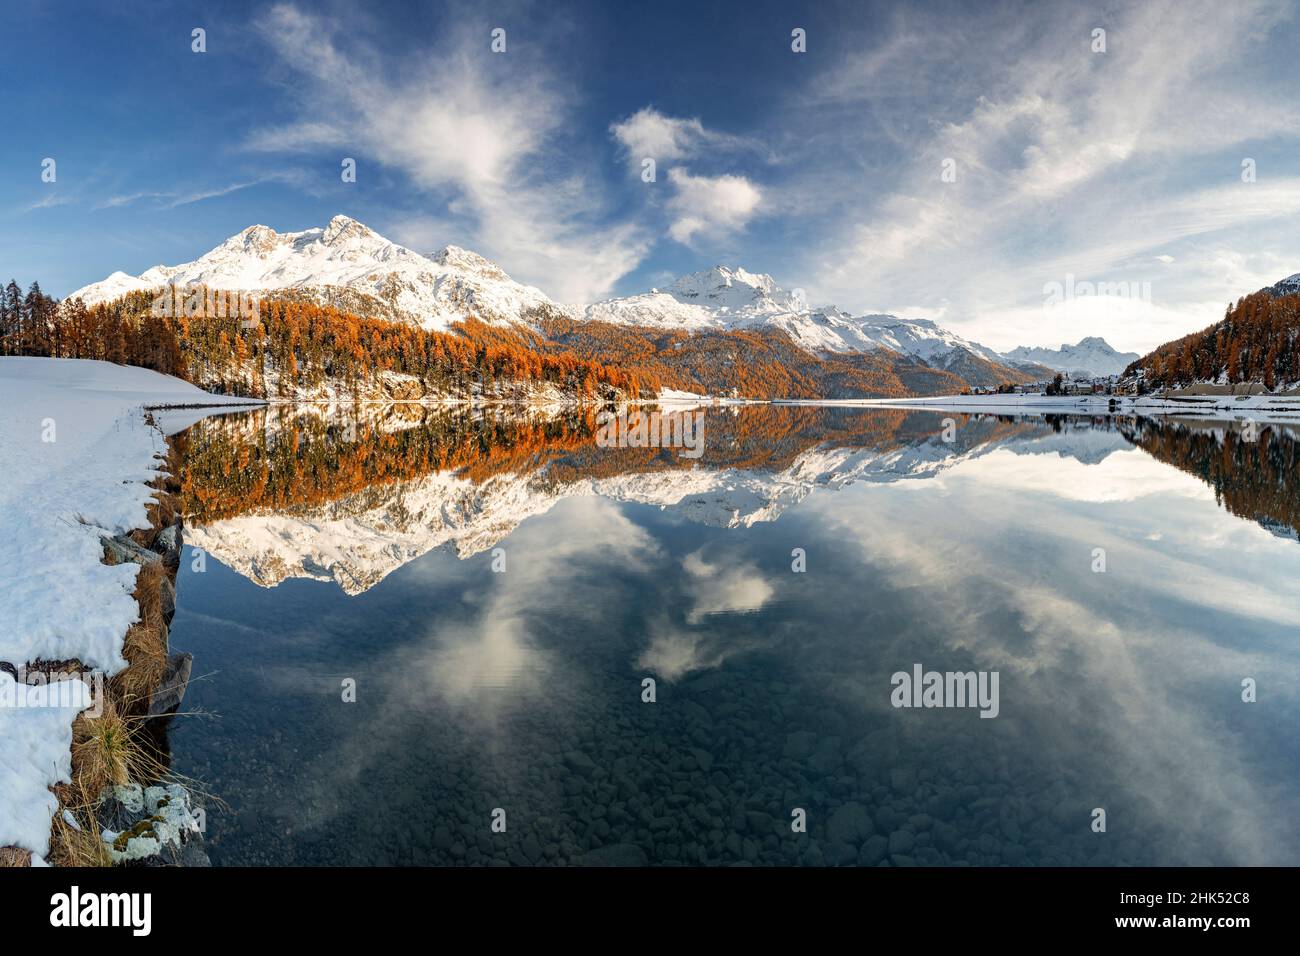 Herbstwälder und schneebedeckte Berge spiegeln sich im klaren Wasser des Champfersees bei Sonnenuntergang, Engadin, Graubünden, Schweiz, Europa Stockfoto